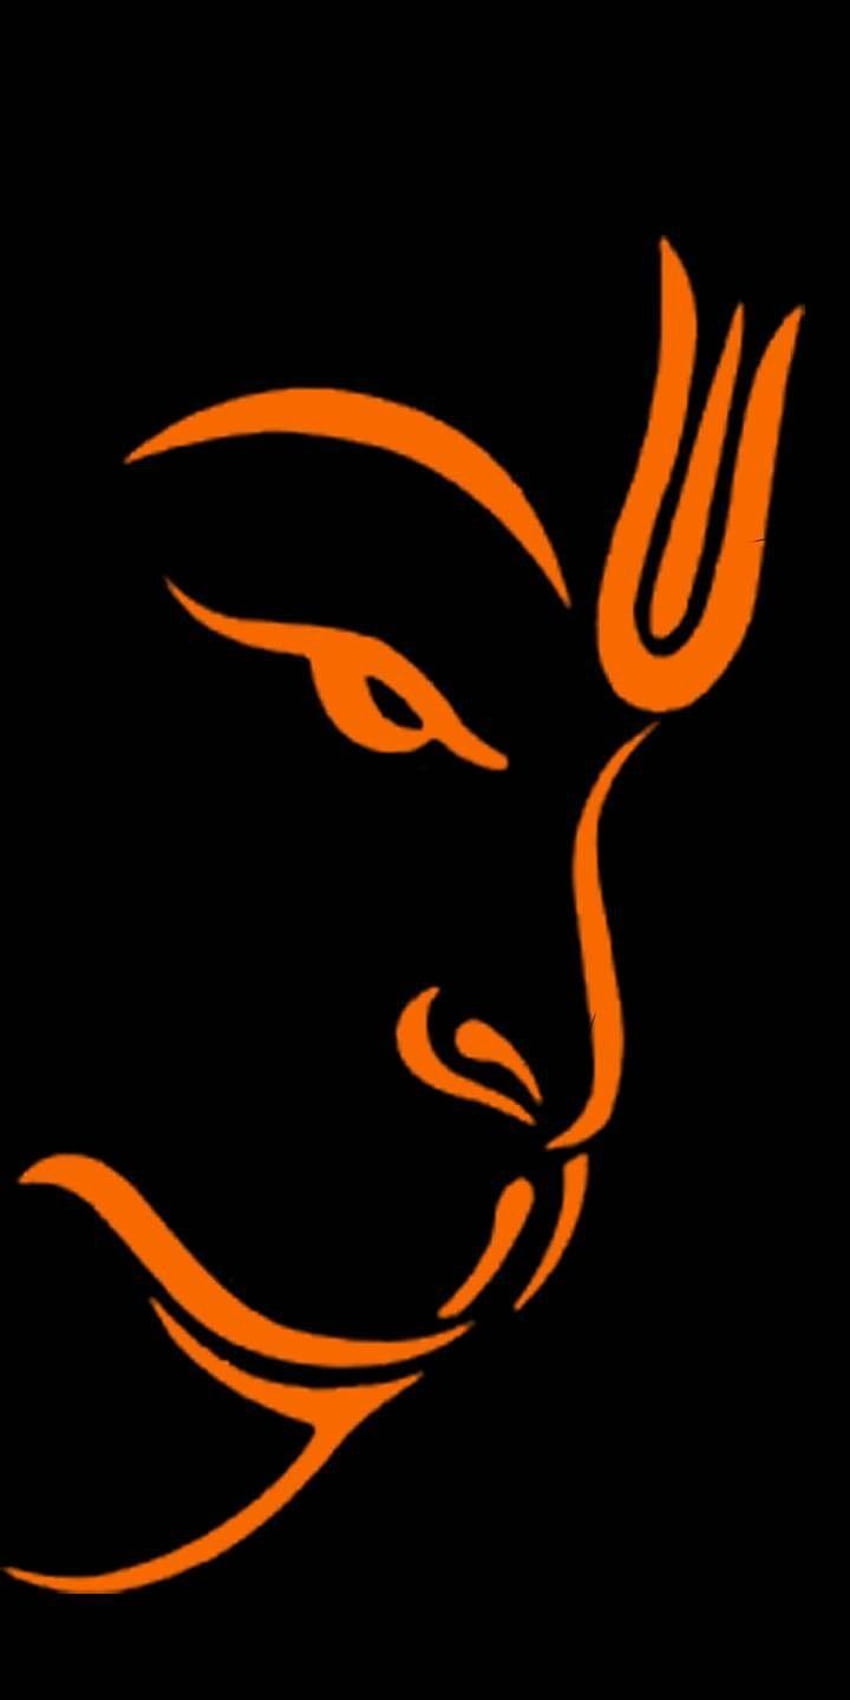 Lord Hanuman Wallpapers | God Hanuman Wallpaper Download - HinduWallpaper